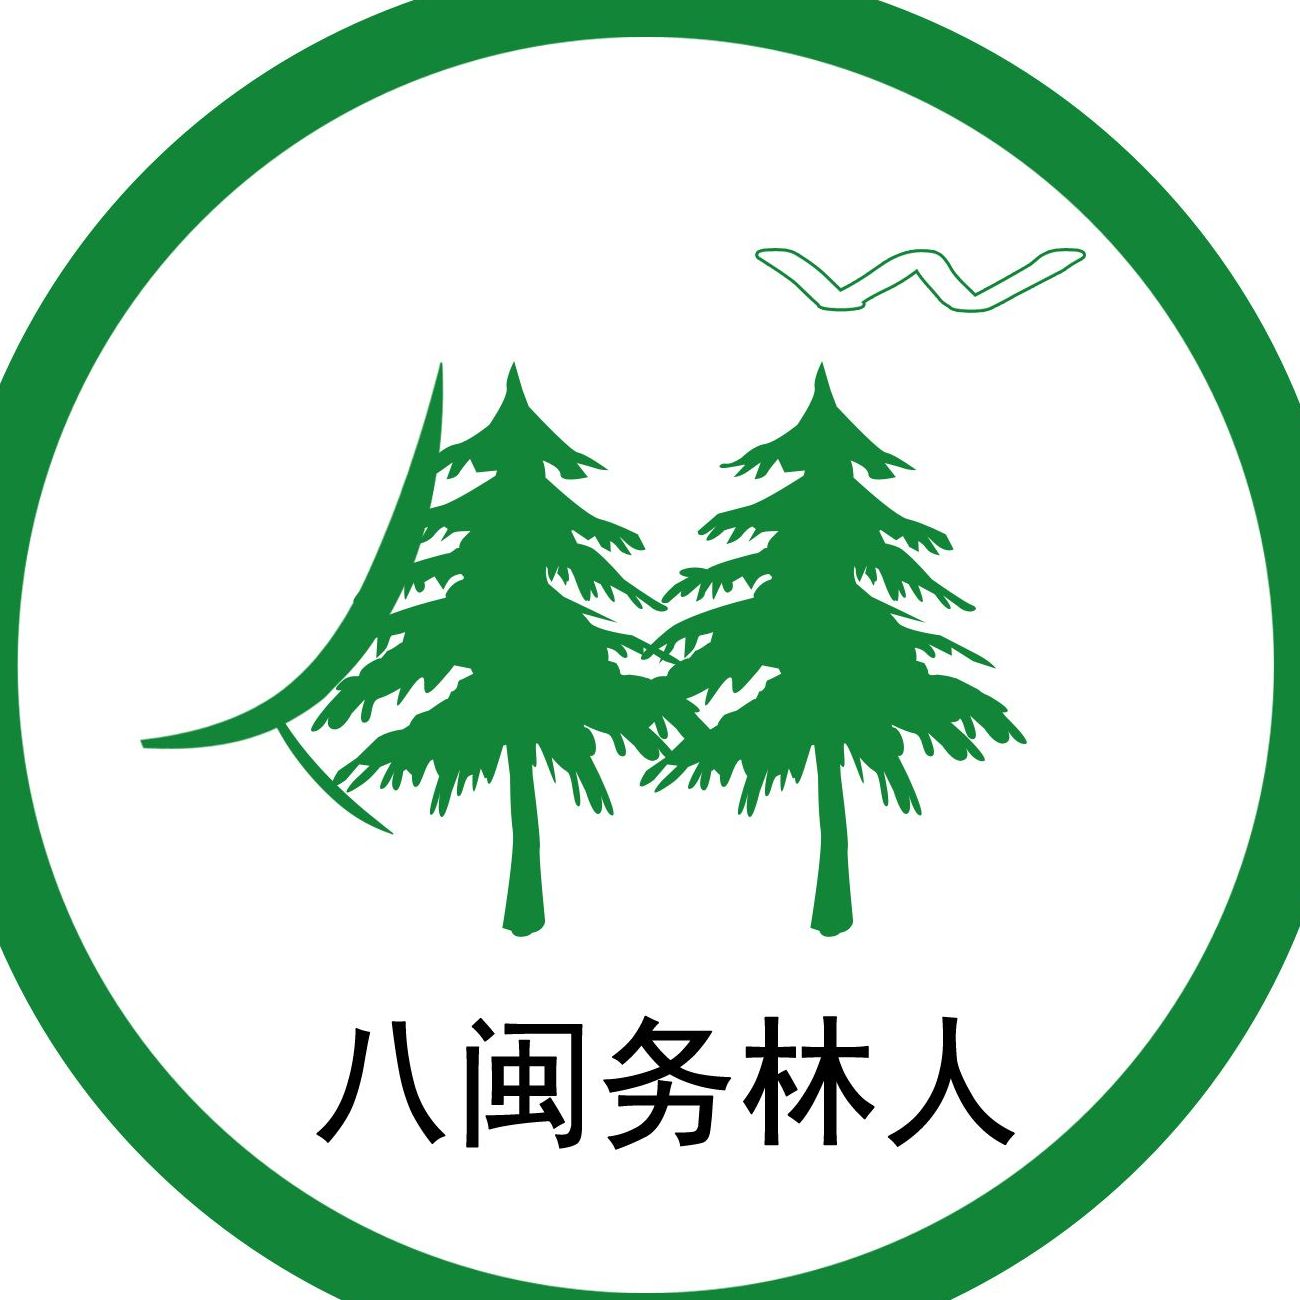 国家林业和草原局logo图片